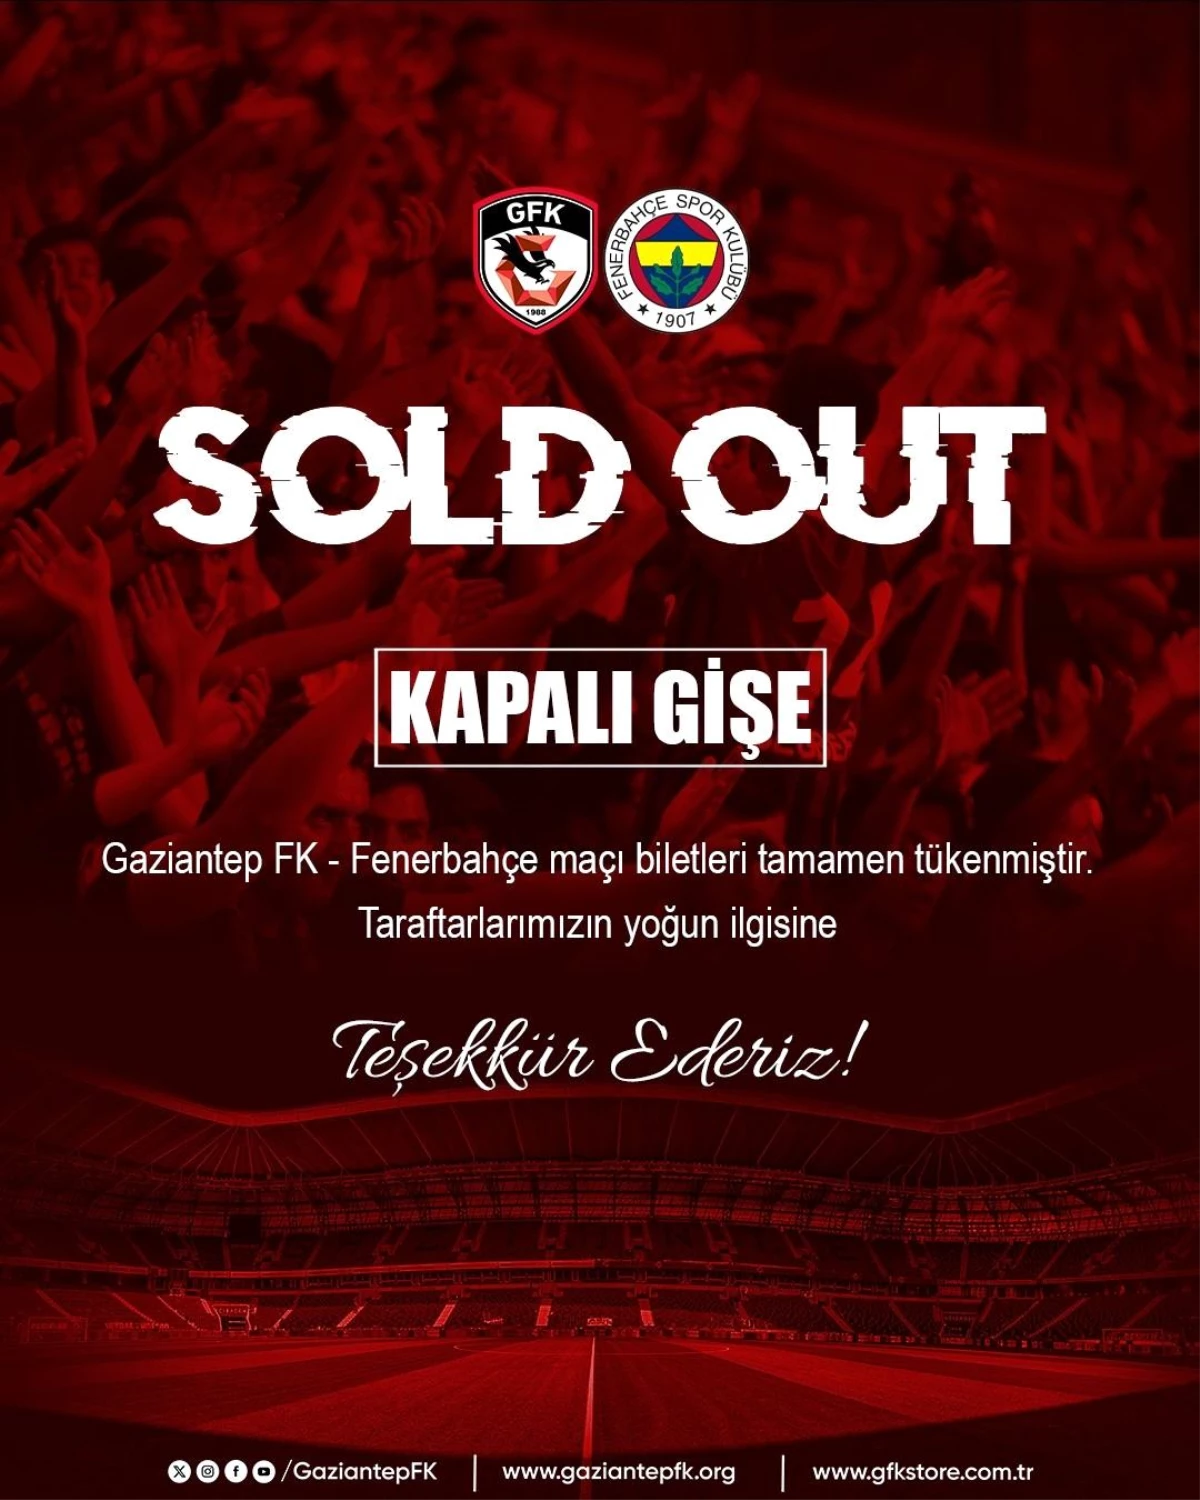 Gaziantep Futbol Kulübü, Fenerbahçe Maçının Biletlerinin Tükendiğini Açıkladı